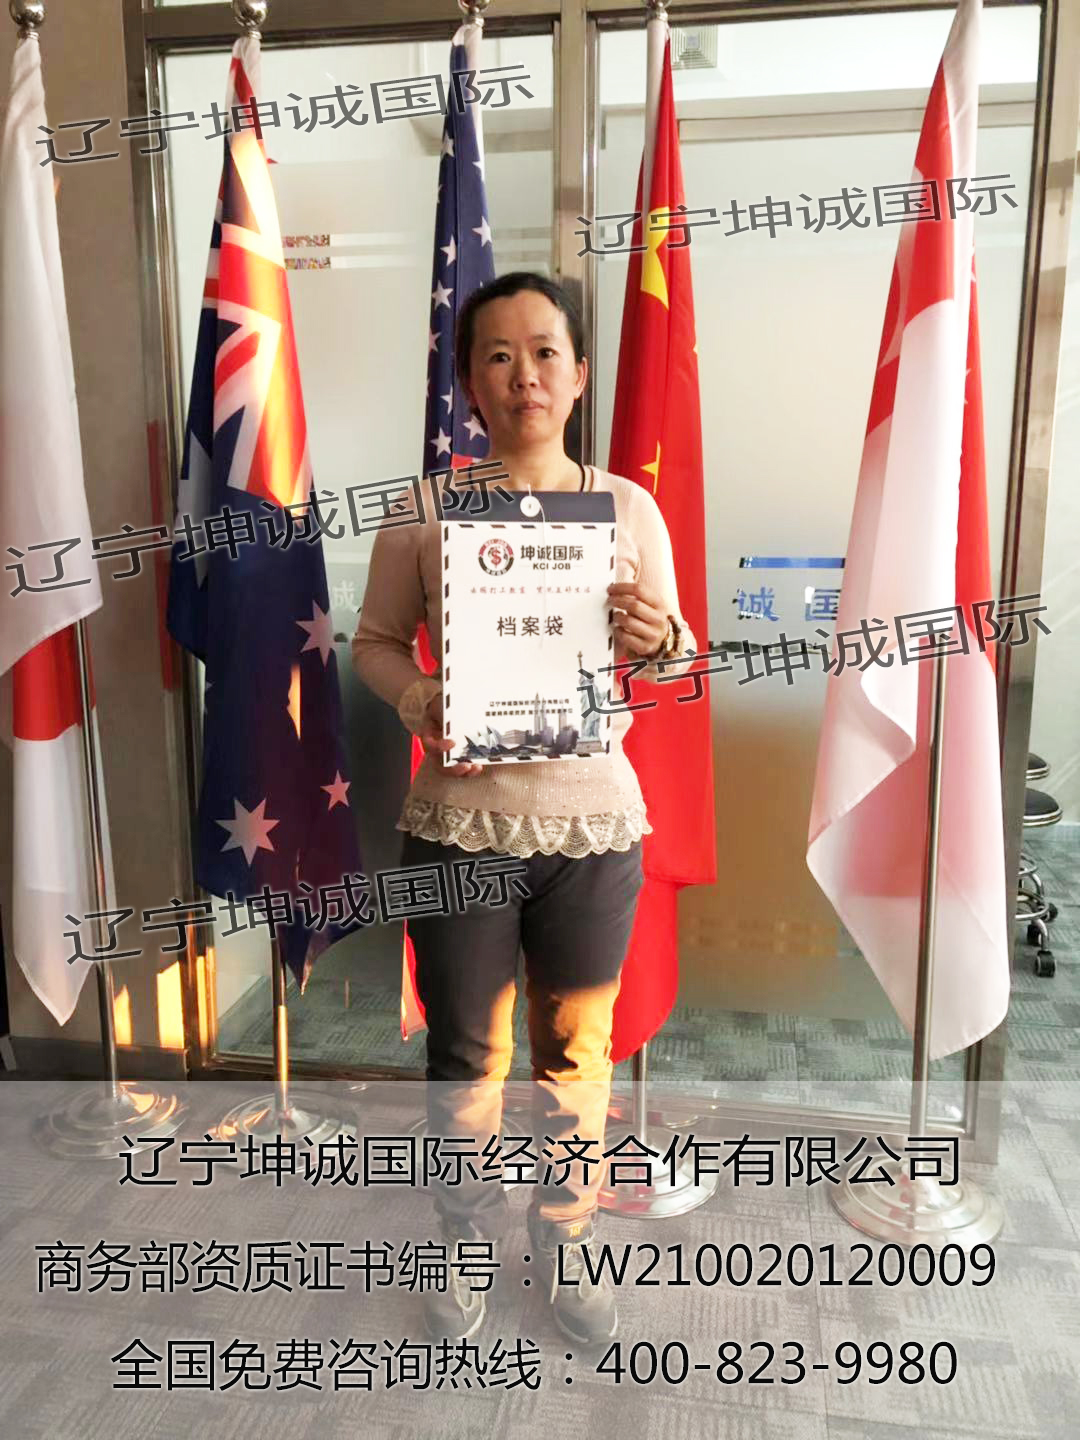 恭喜雷女士新加坡项目报名成功